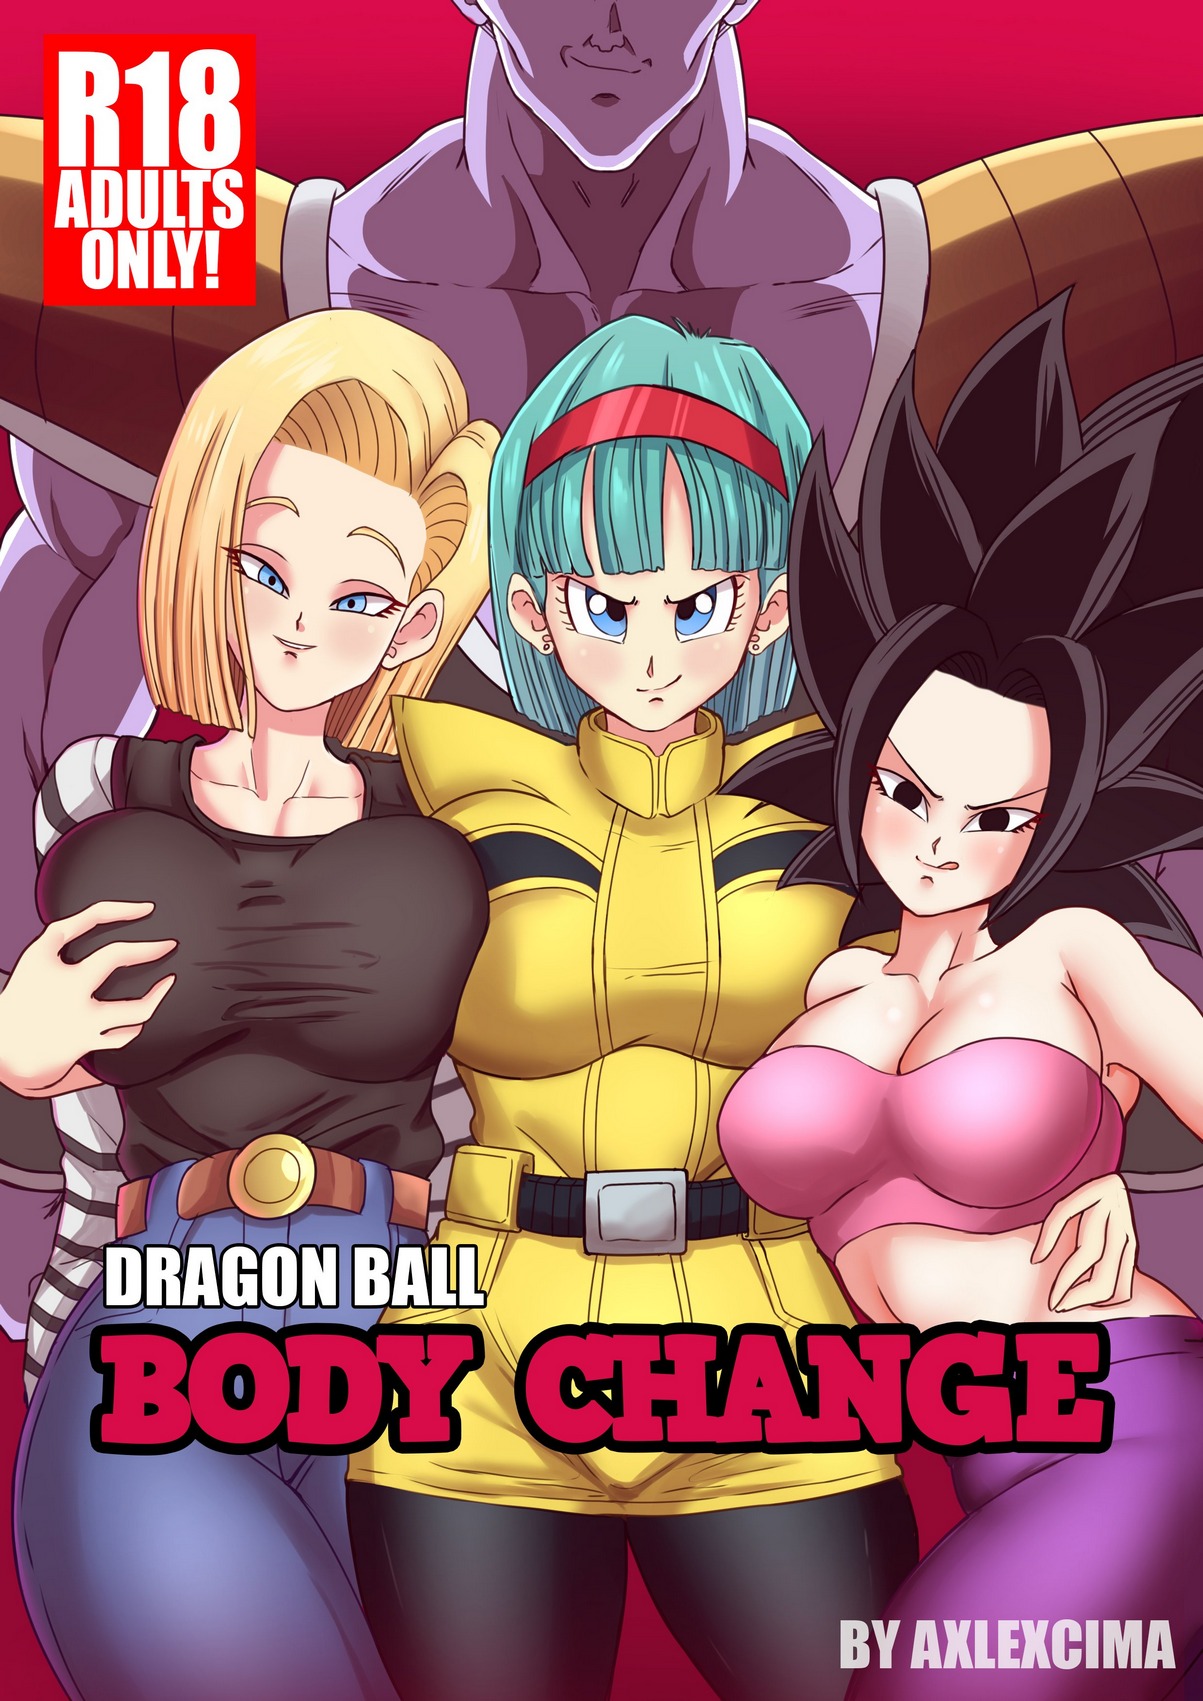 Body change dragon ball super porn comic